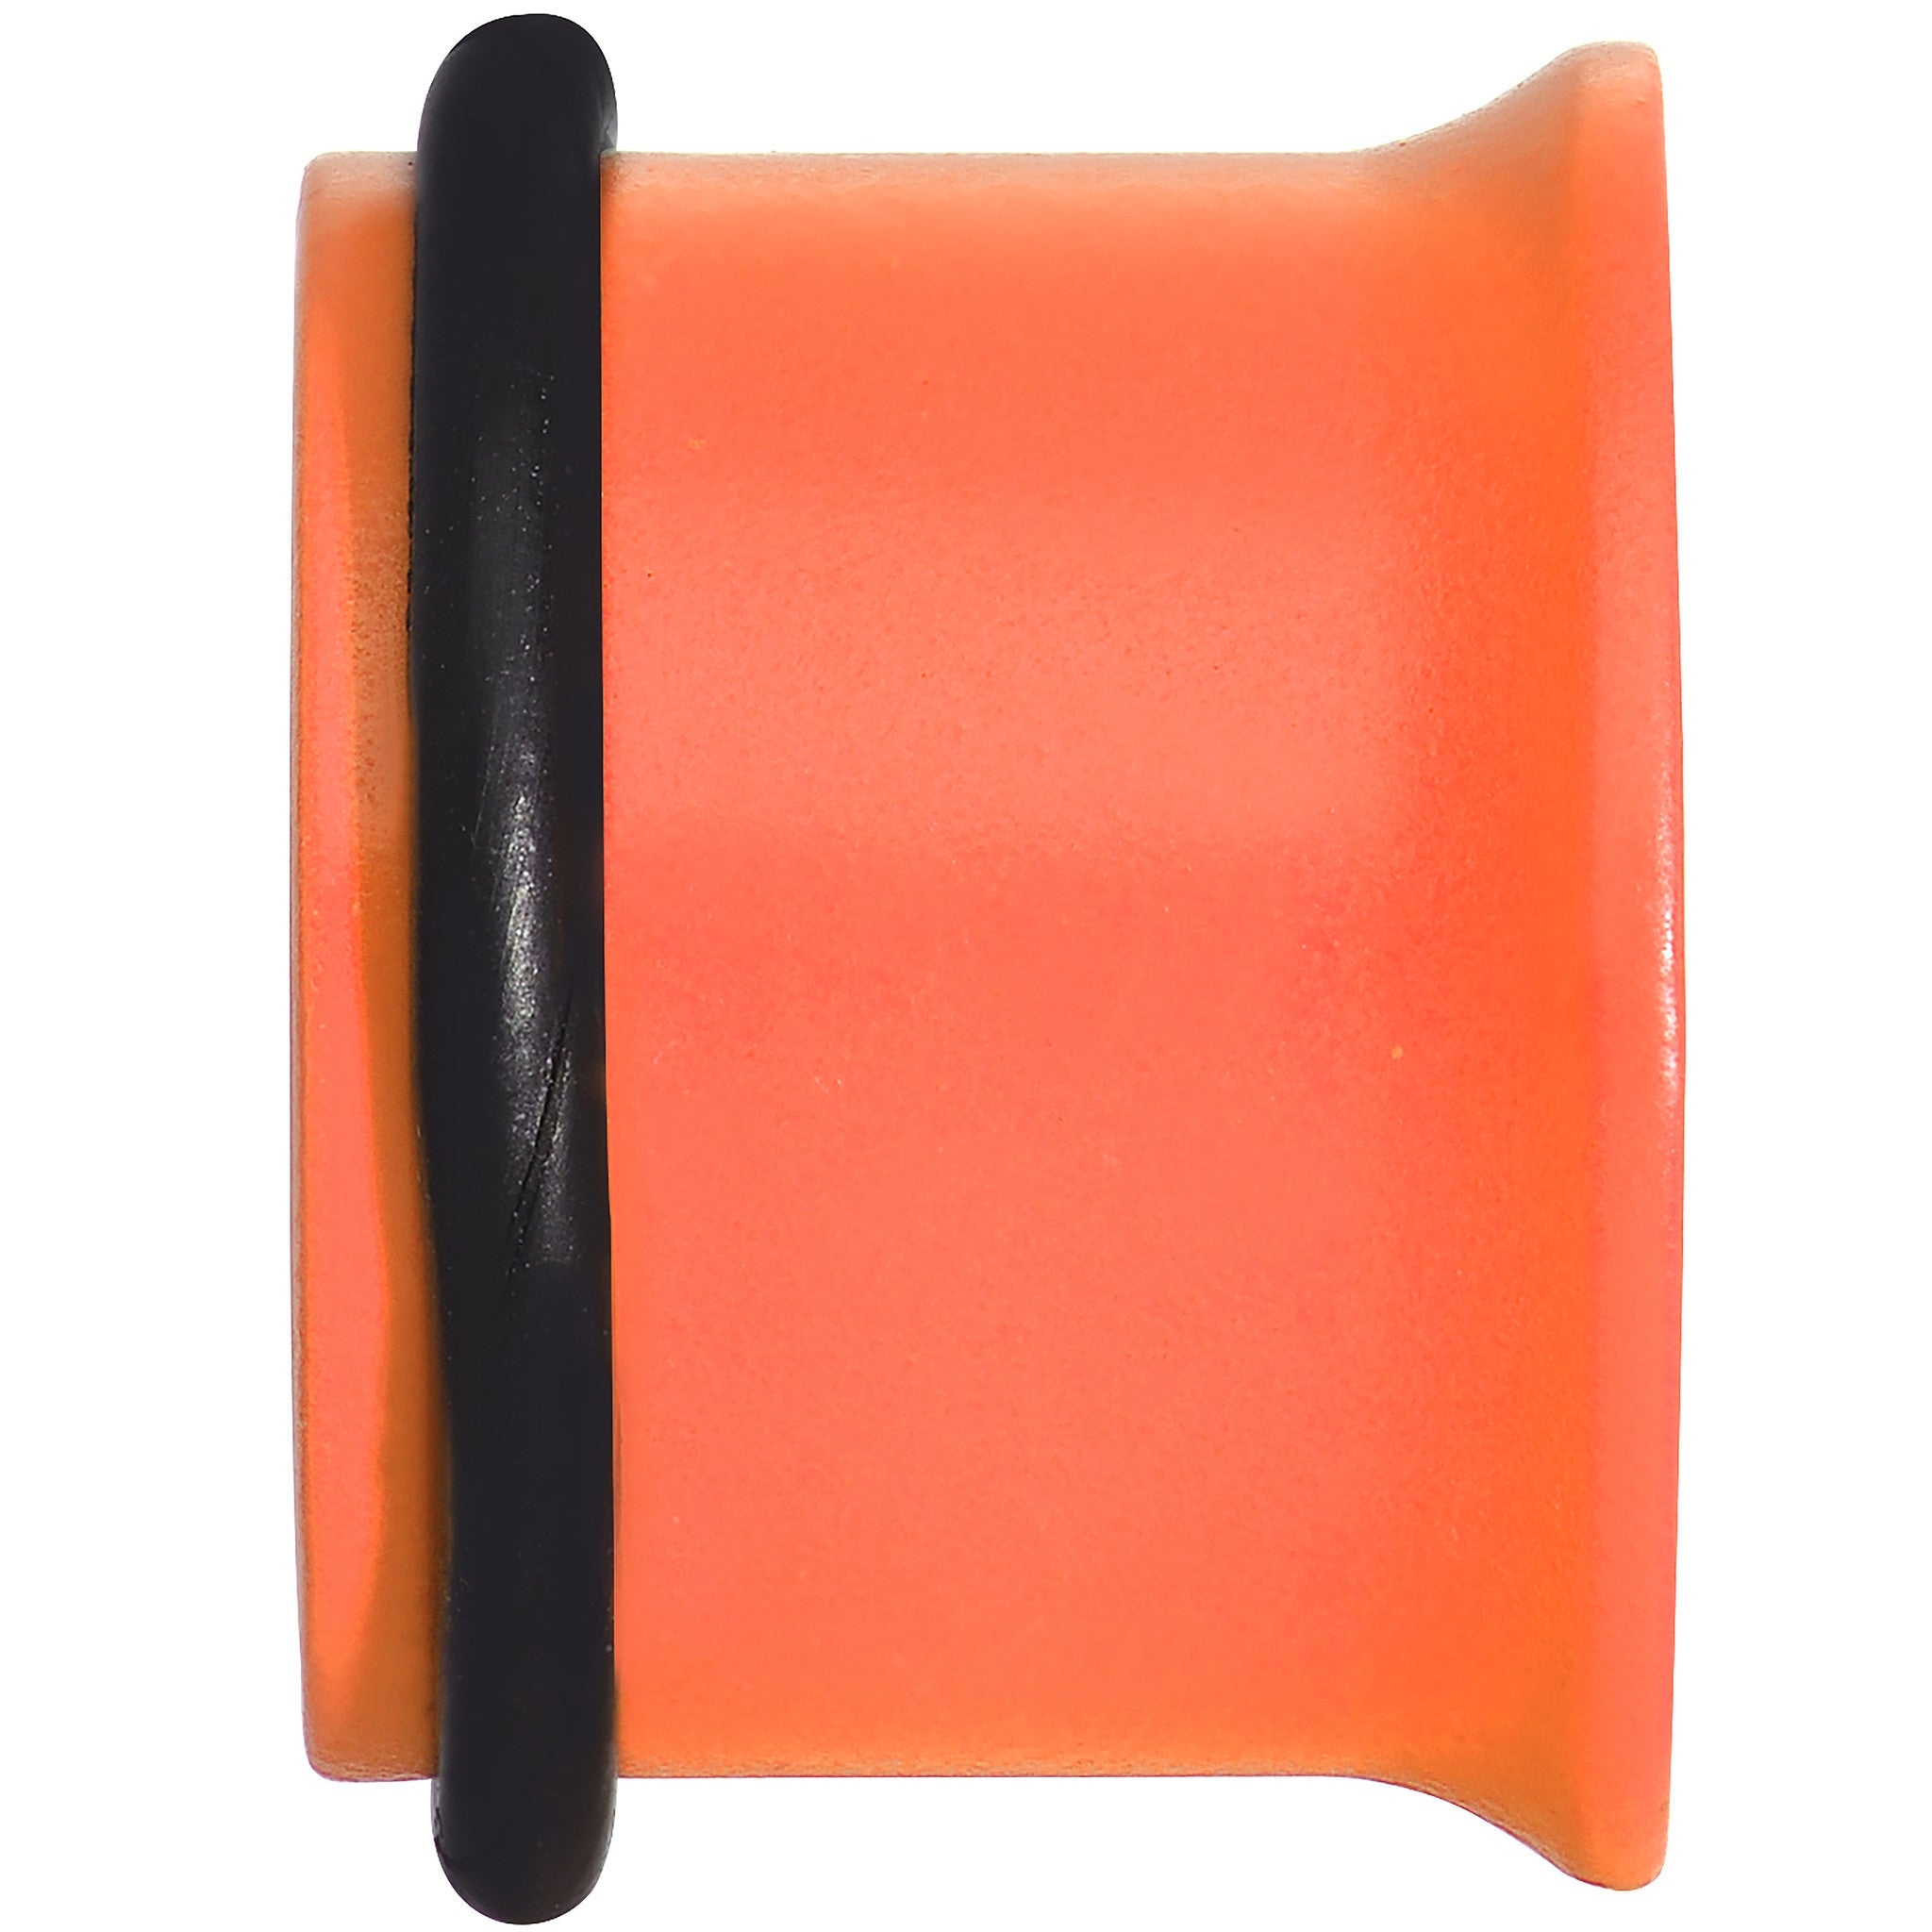 1/2 Orange Neon Coated Stainless Steel Single Flare Tunnel Plug